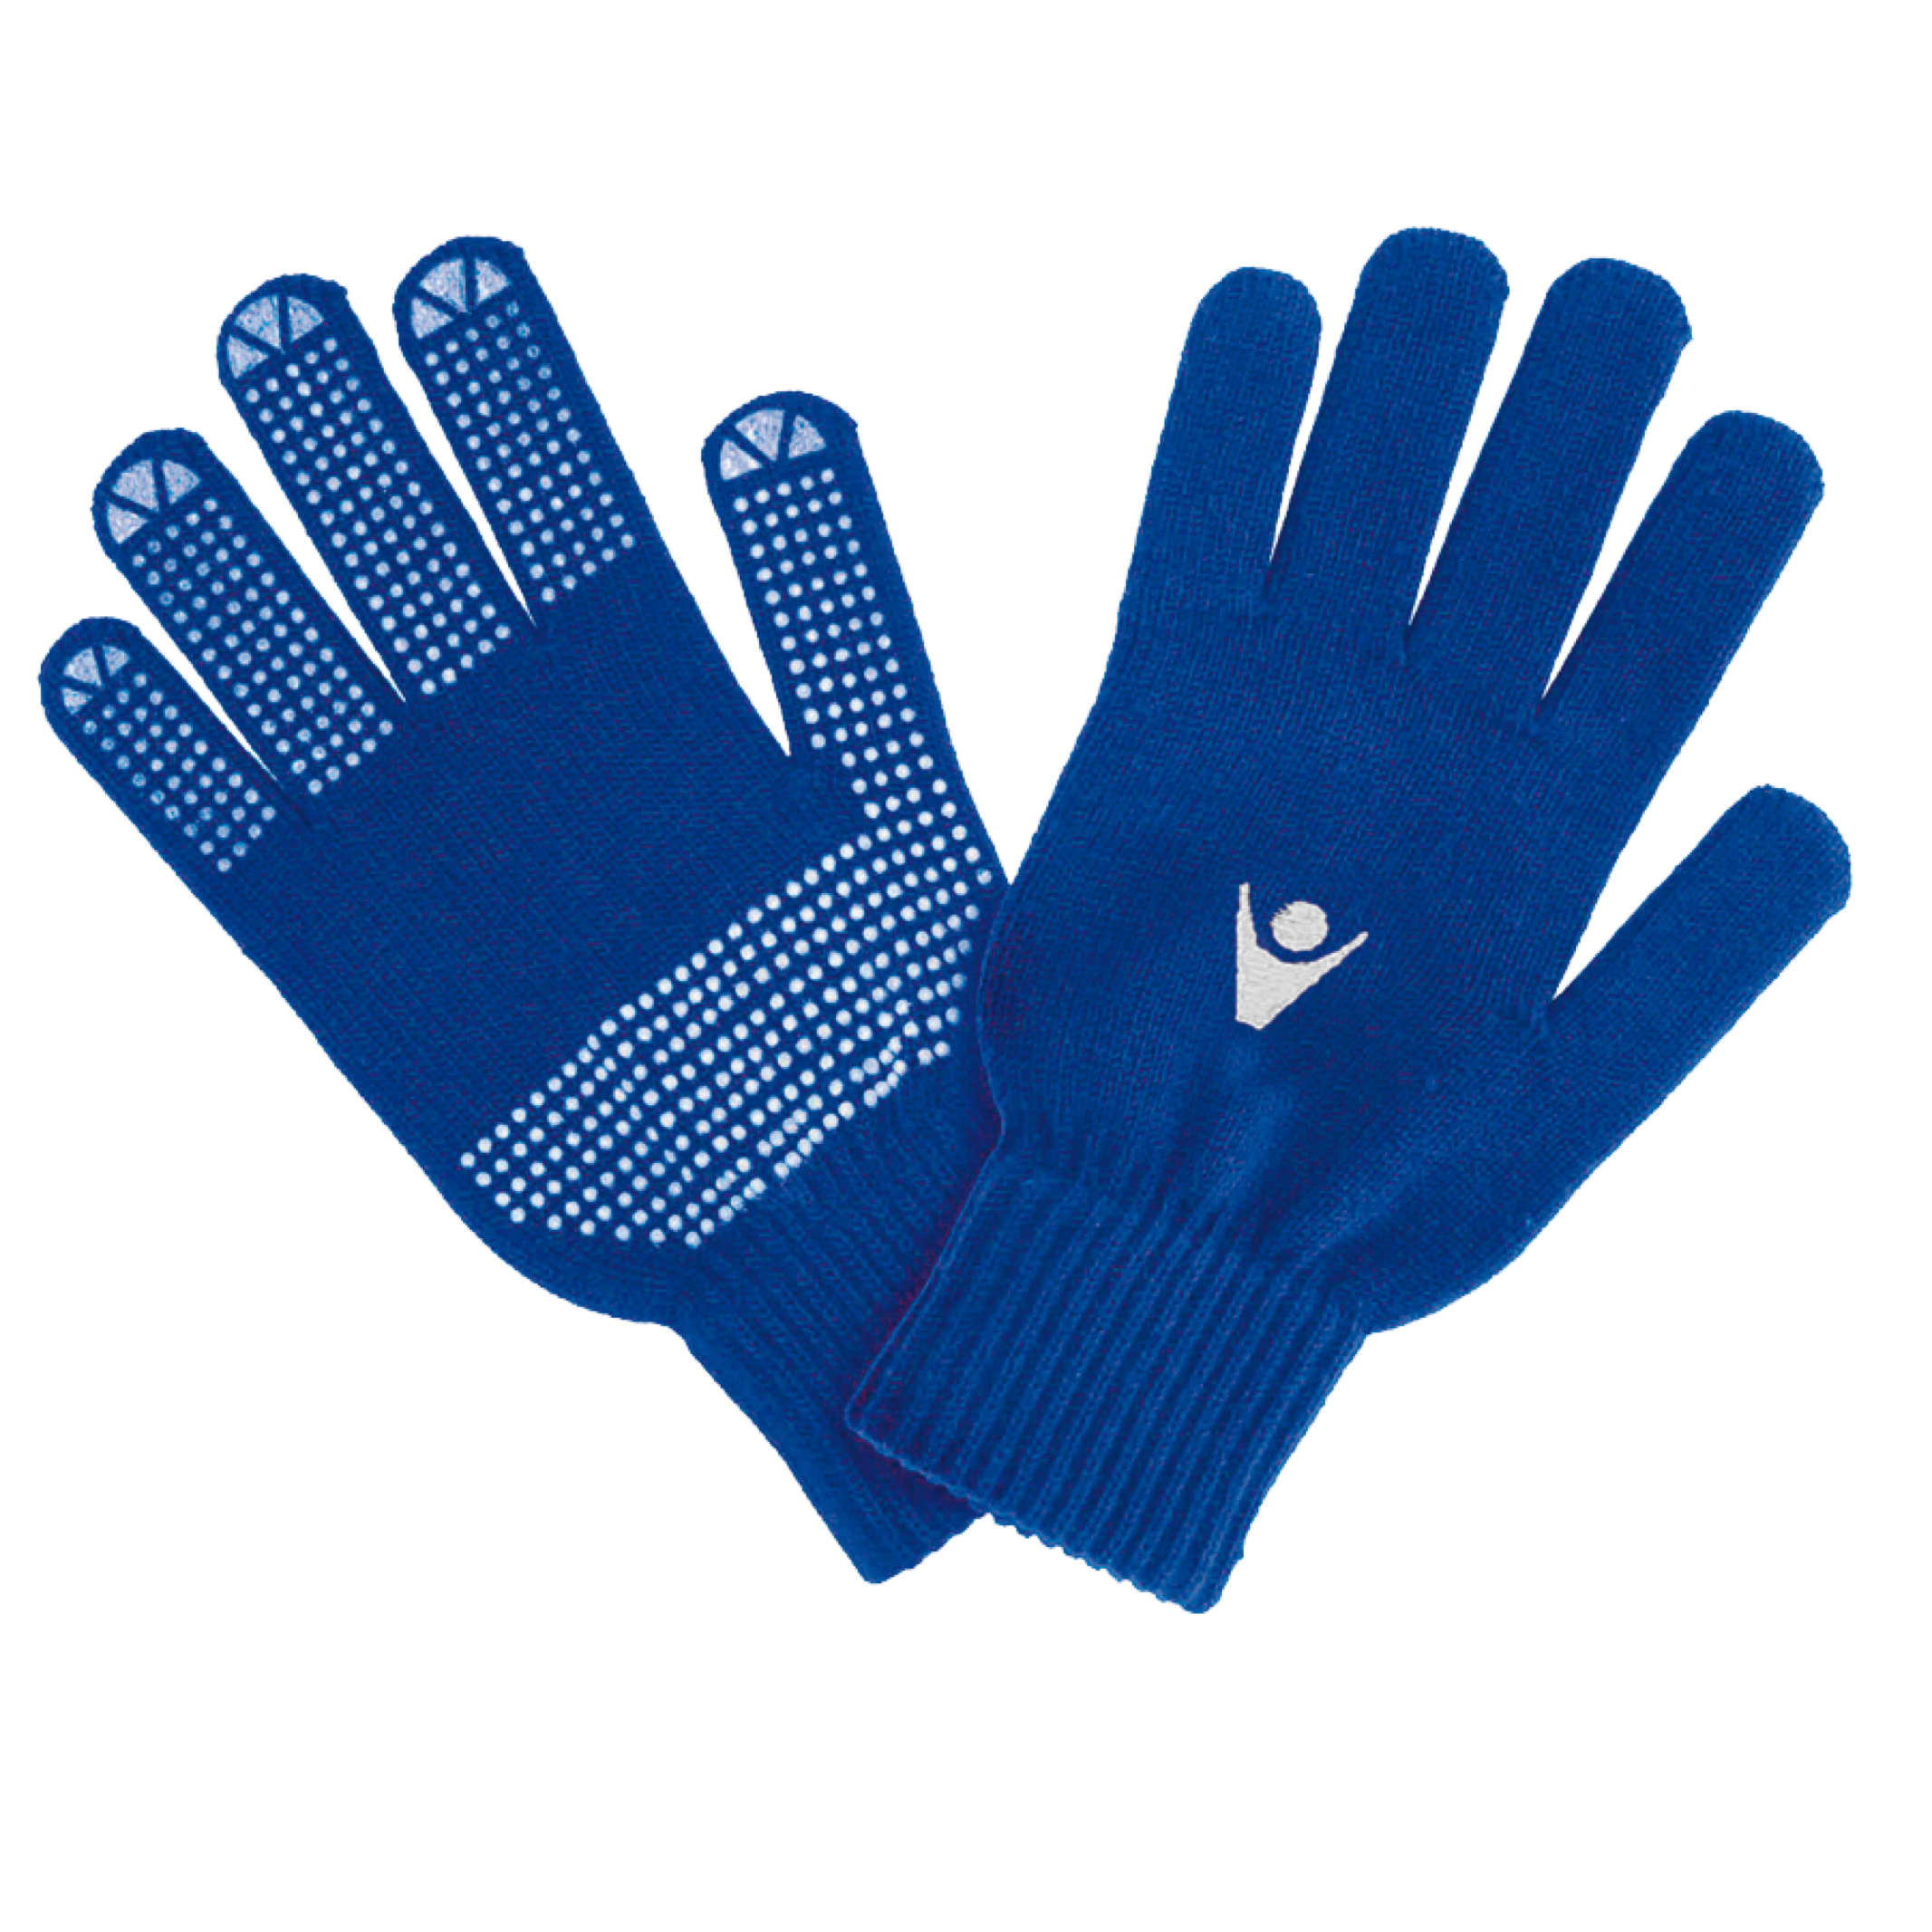 Adelaide Wanderers Gloves - Rivet